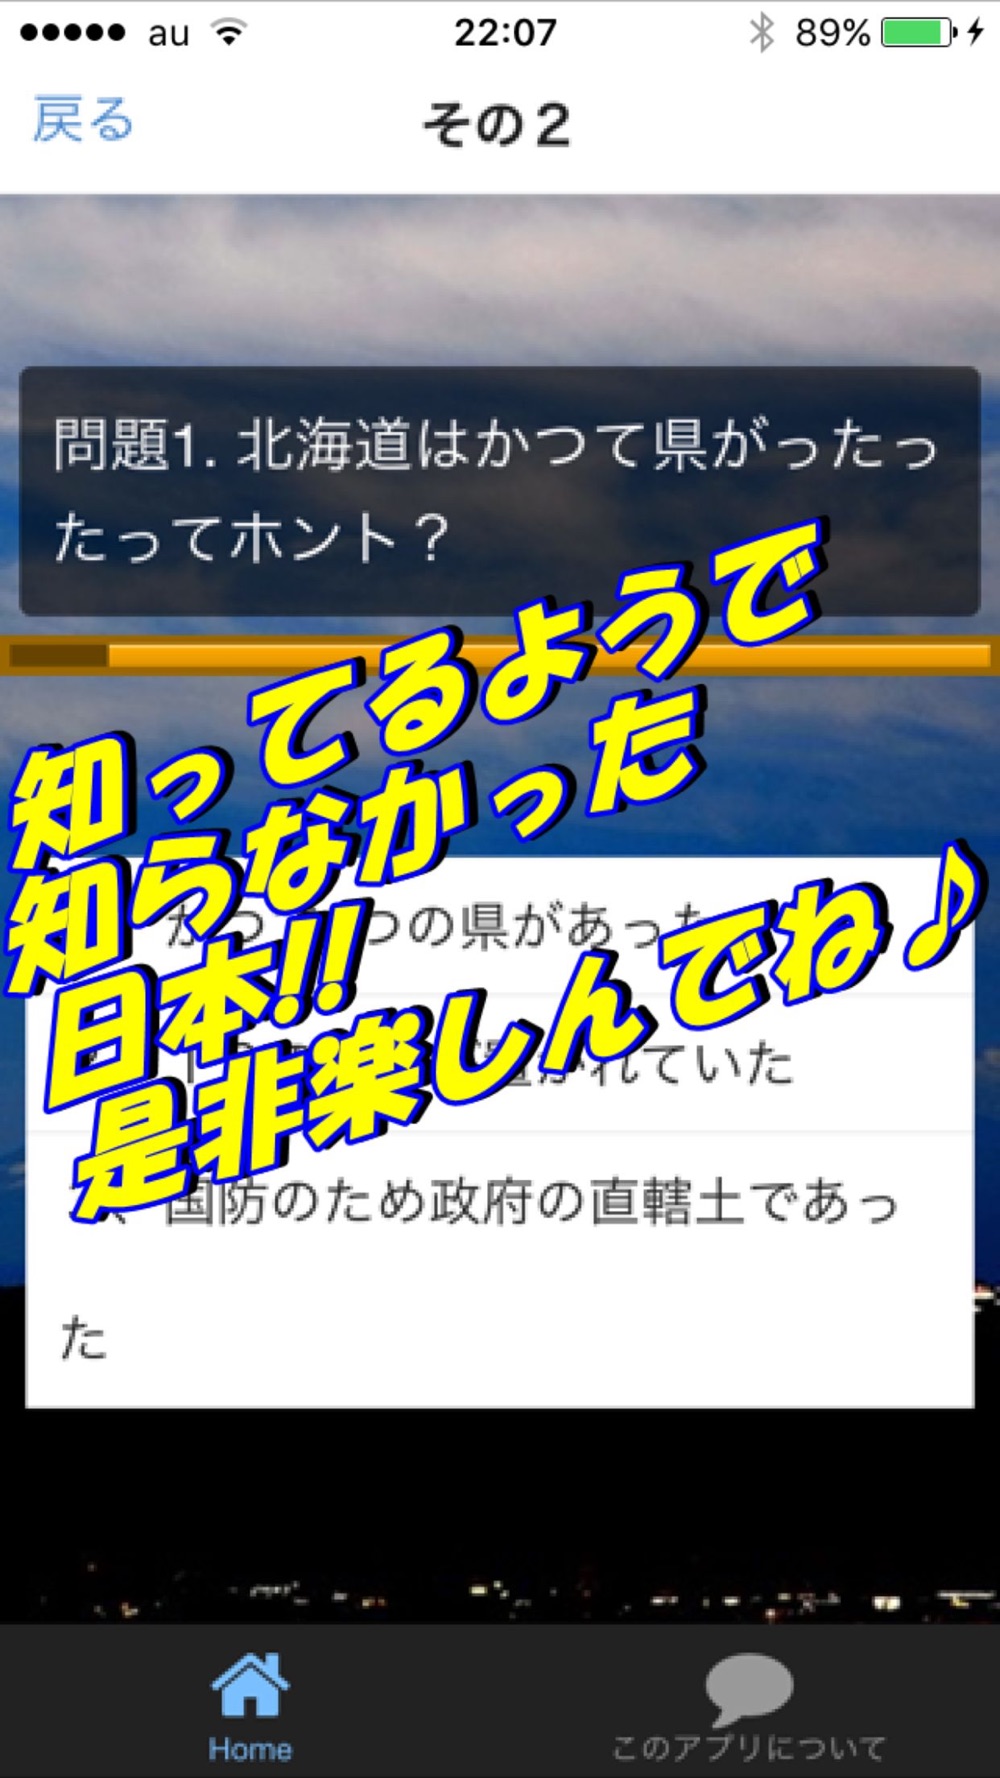 びっくり 日本地理 雑学クイズ Free Download App For Iphone Steprimo Com